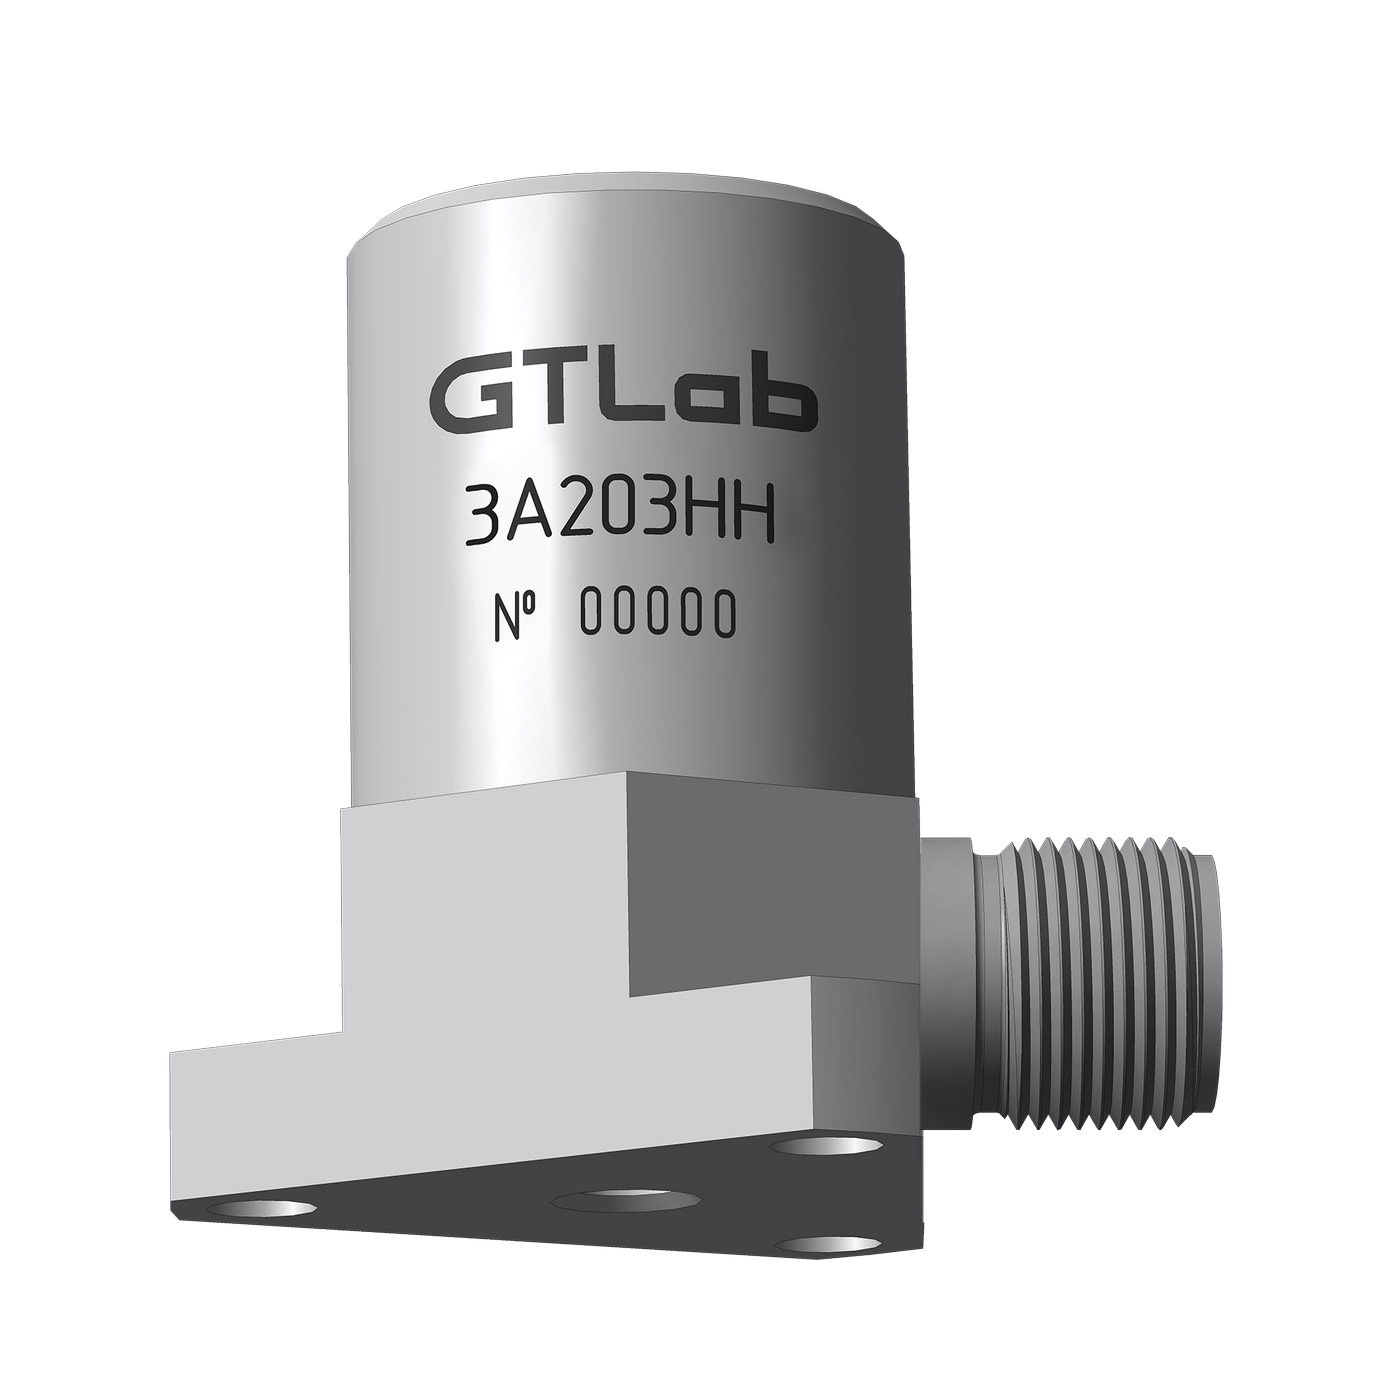 Датчик виброперемещения с токовым выходом промышленный GTLAB 3A203HH-640 Дозиметры